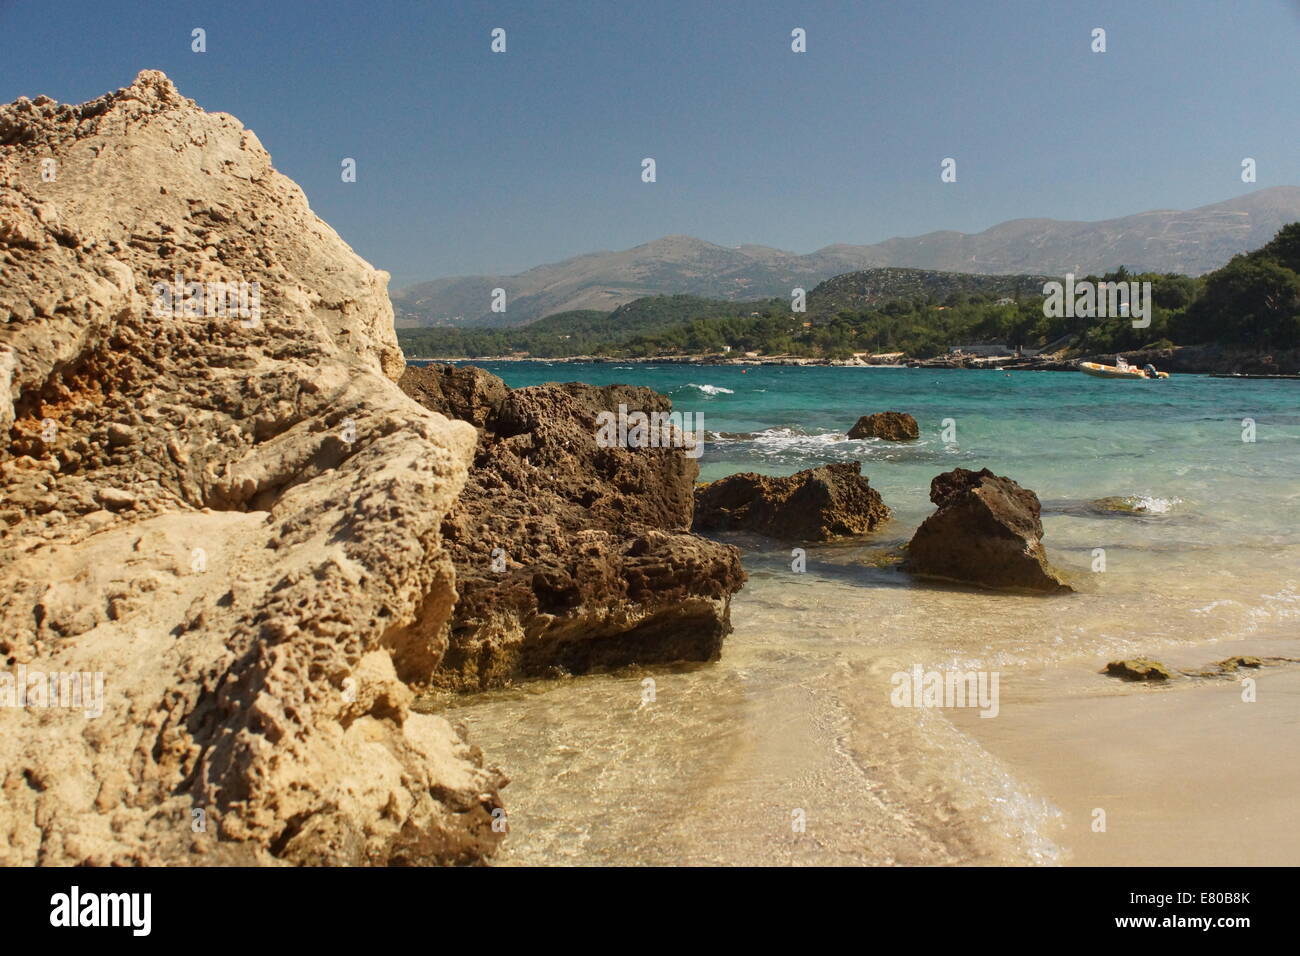 Scène de plage côtière, rochers, mer bleu clair, sable blanc, des montagnes, de l'eau Banque D'Images